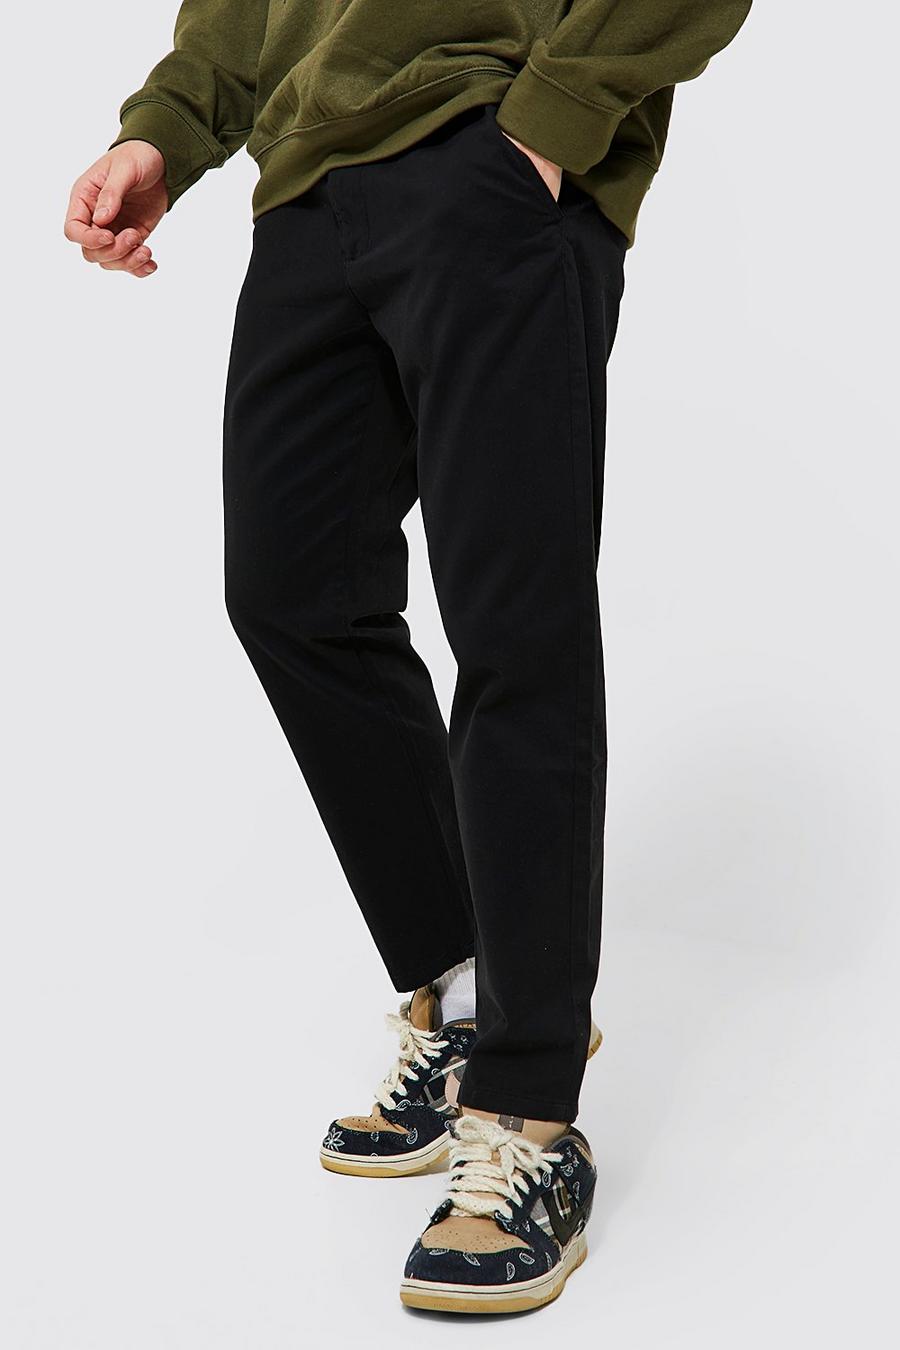 Pantalones chinos ajustados, Black negro